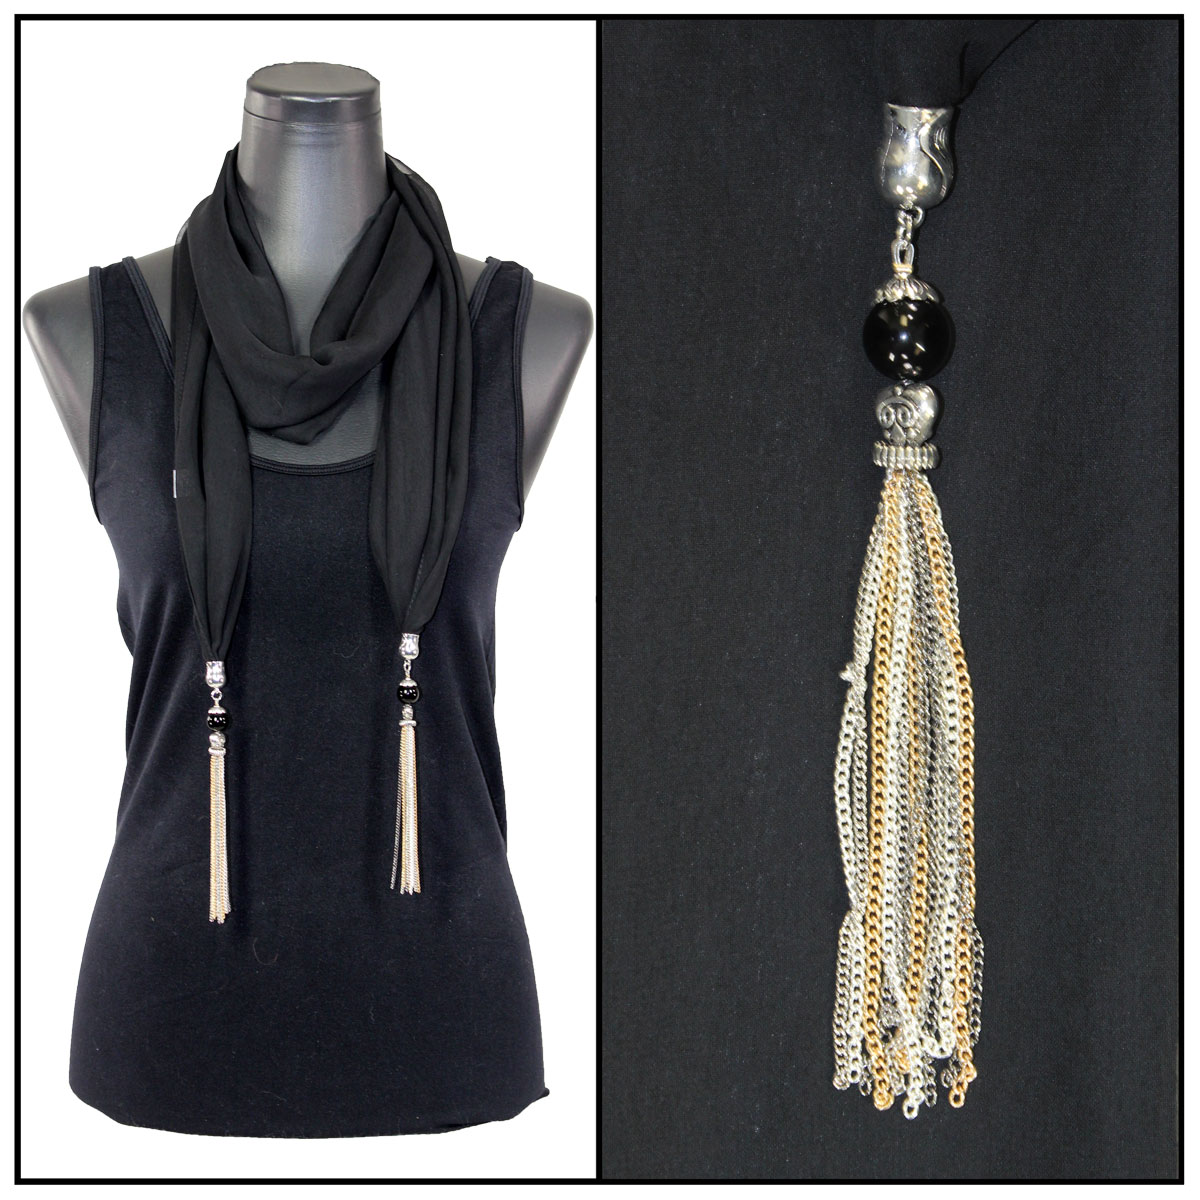 9001 - Tasseled Silky Dress Scarves Solid Royal<br>
Metal Tassels - 